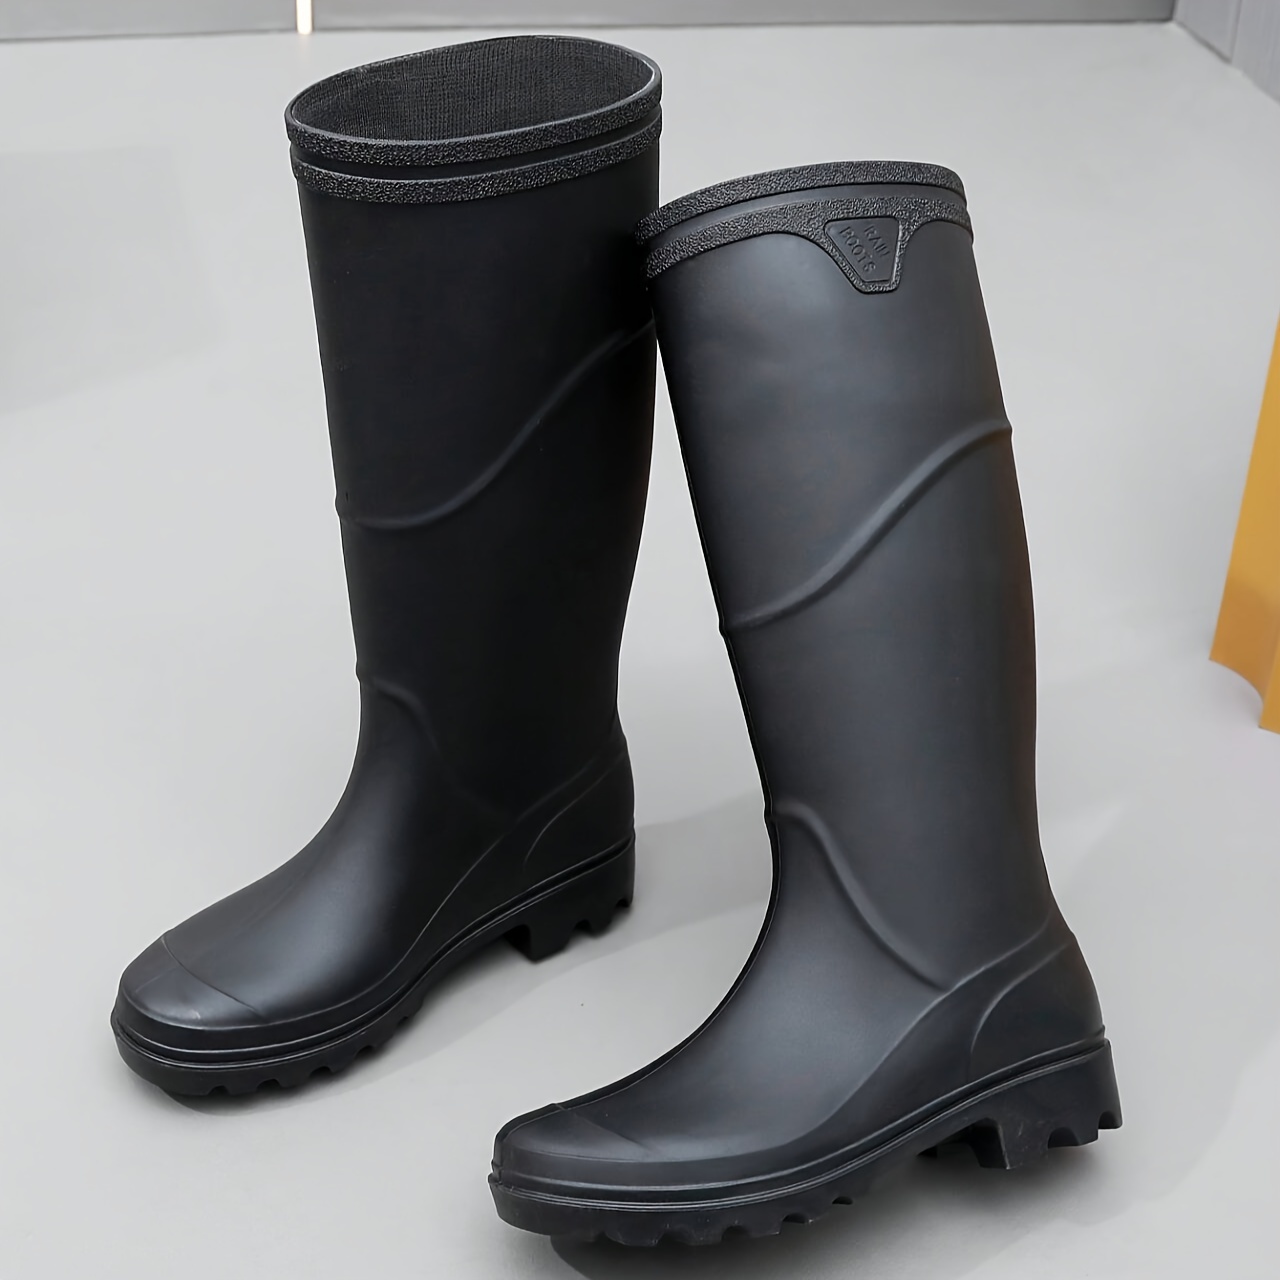 high top rain boots men s wear resistant waterproof non slip